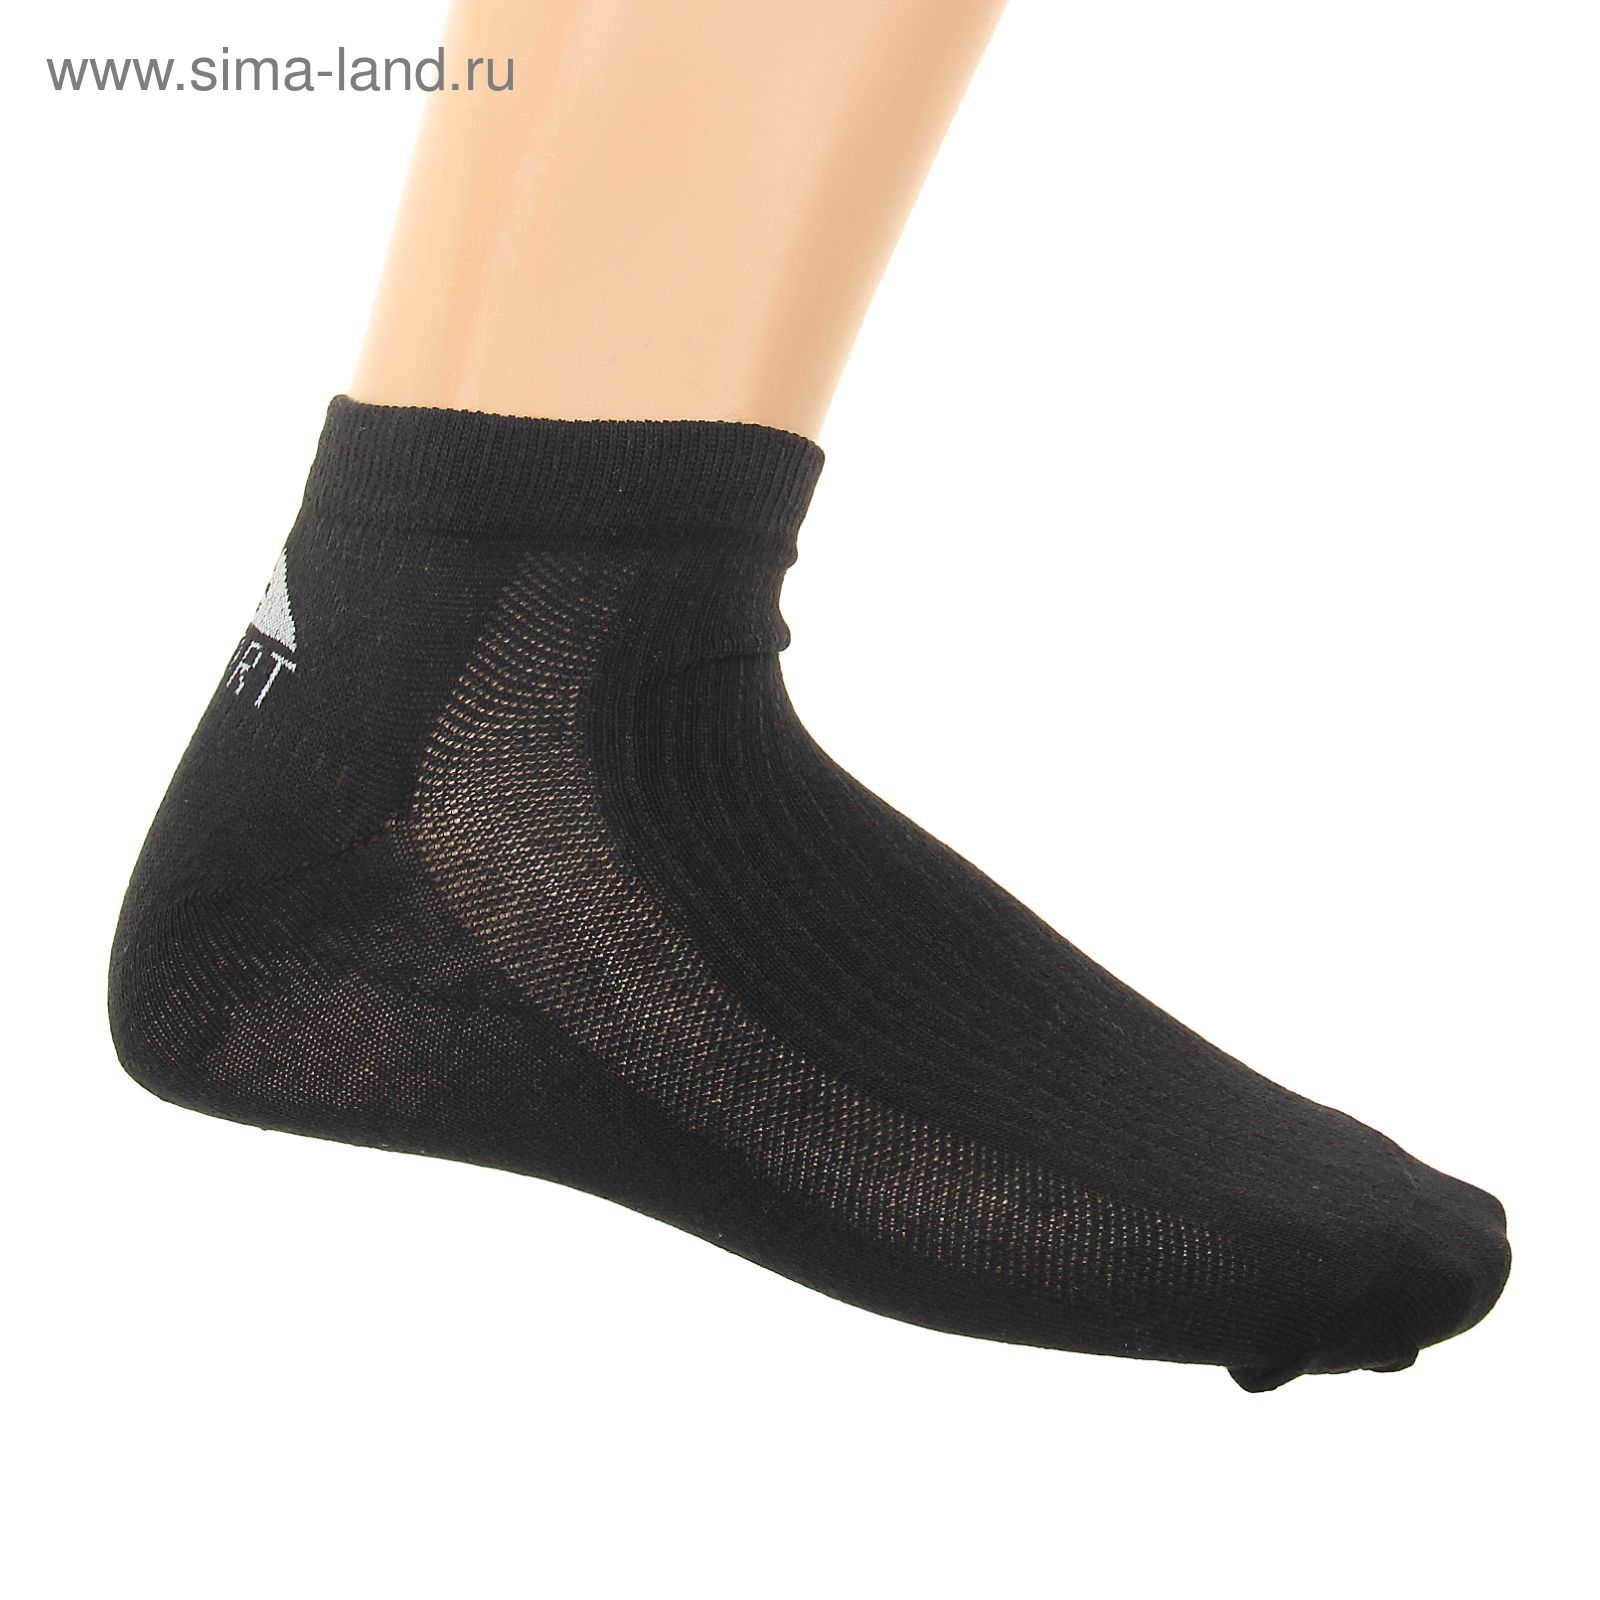 Носки женские спортивные M-267, цвет черный, размер 23-25